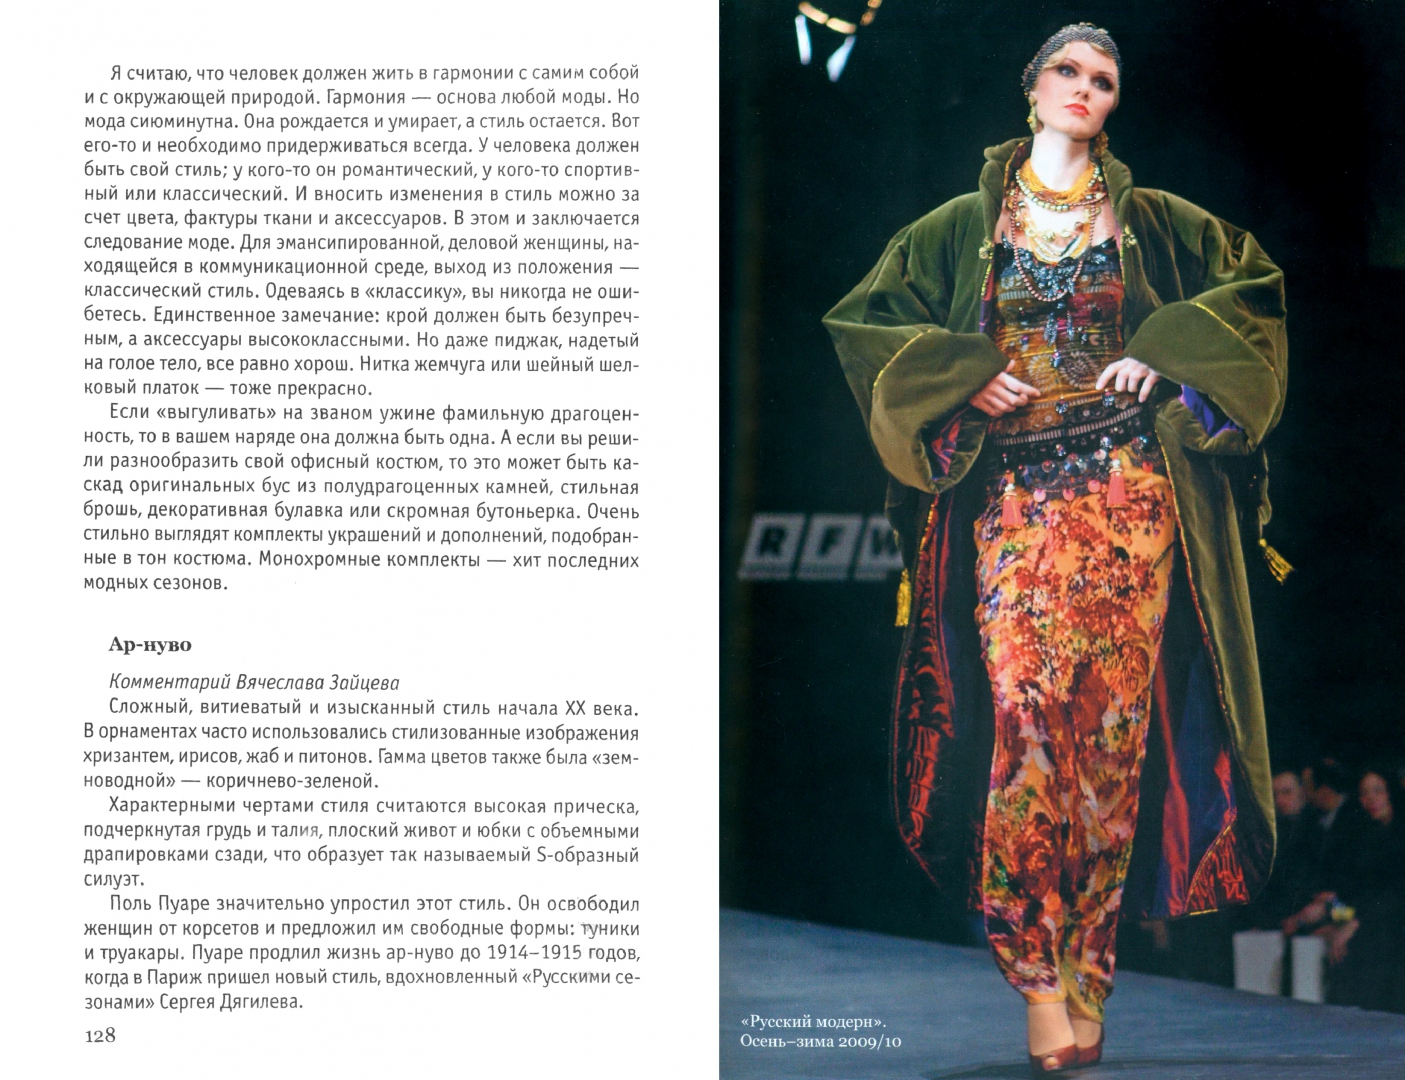 Иллюстрация 1 из 5 для Платье на выход - Зайцев, Буренина | Лабиринт - книги. Источник: Лабиринт